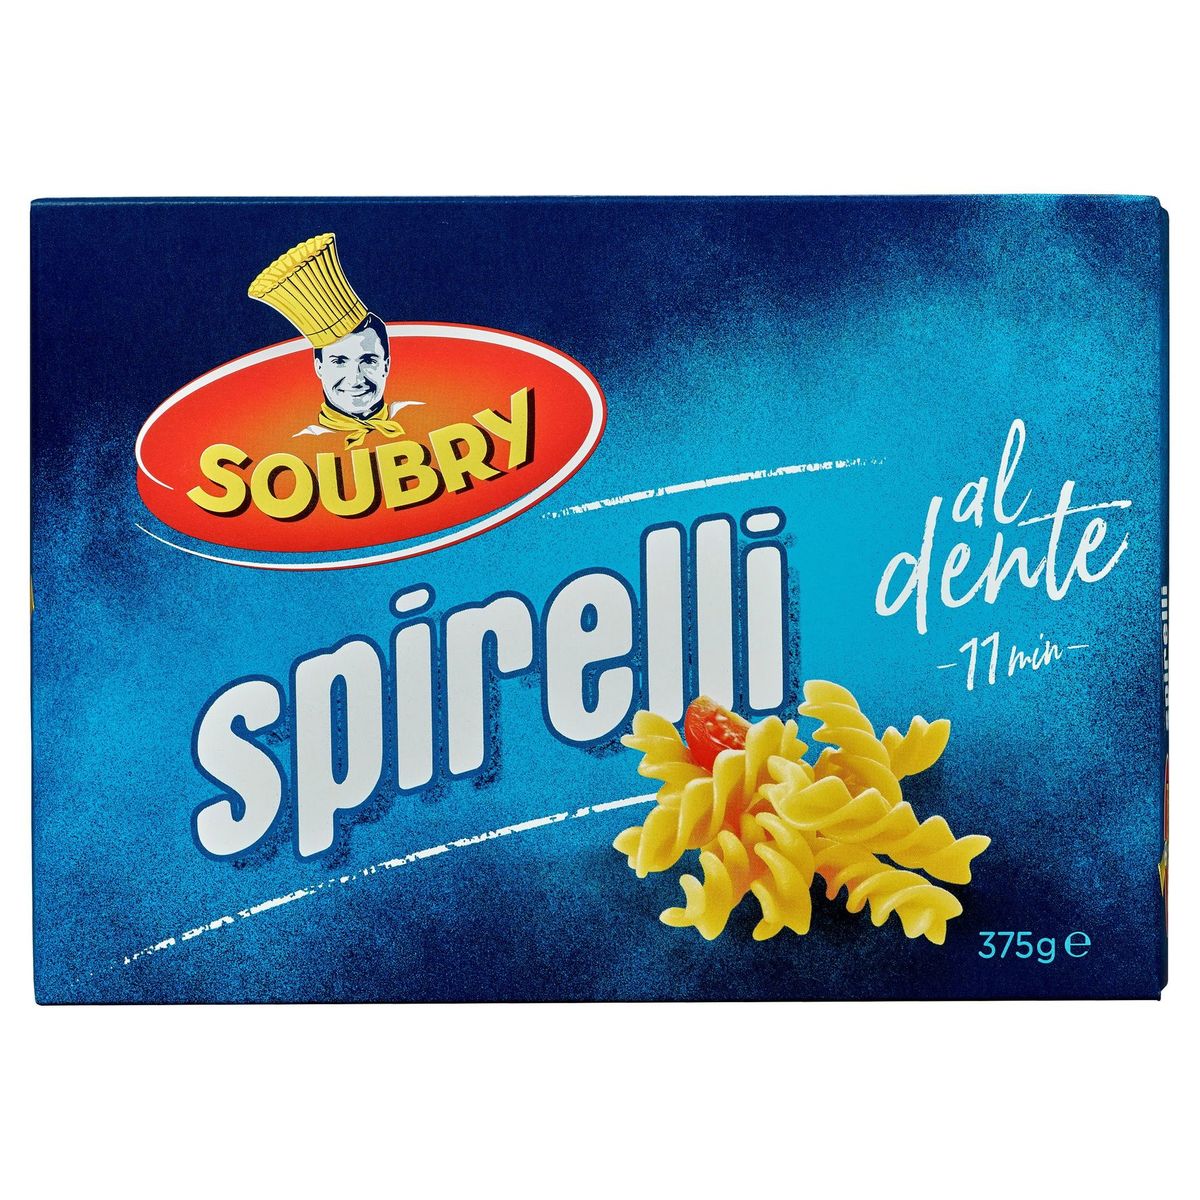 Soubry Pâtes Spirelli 375g